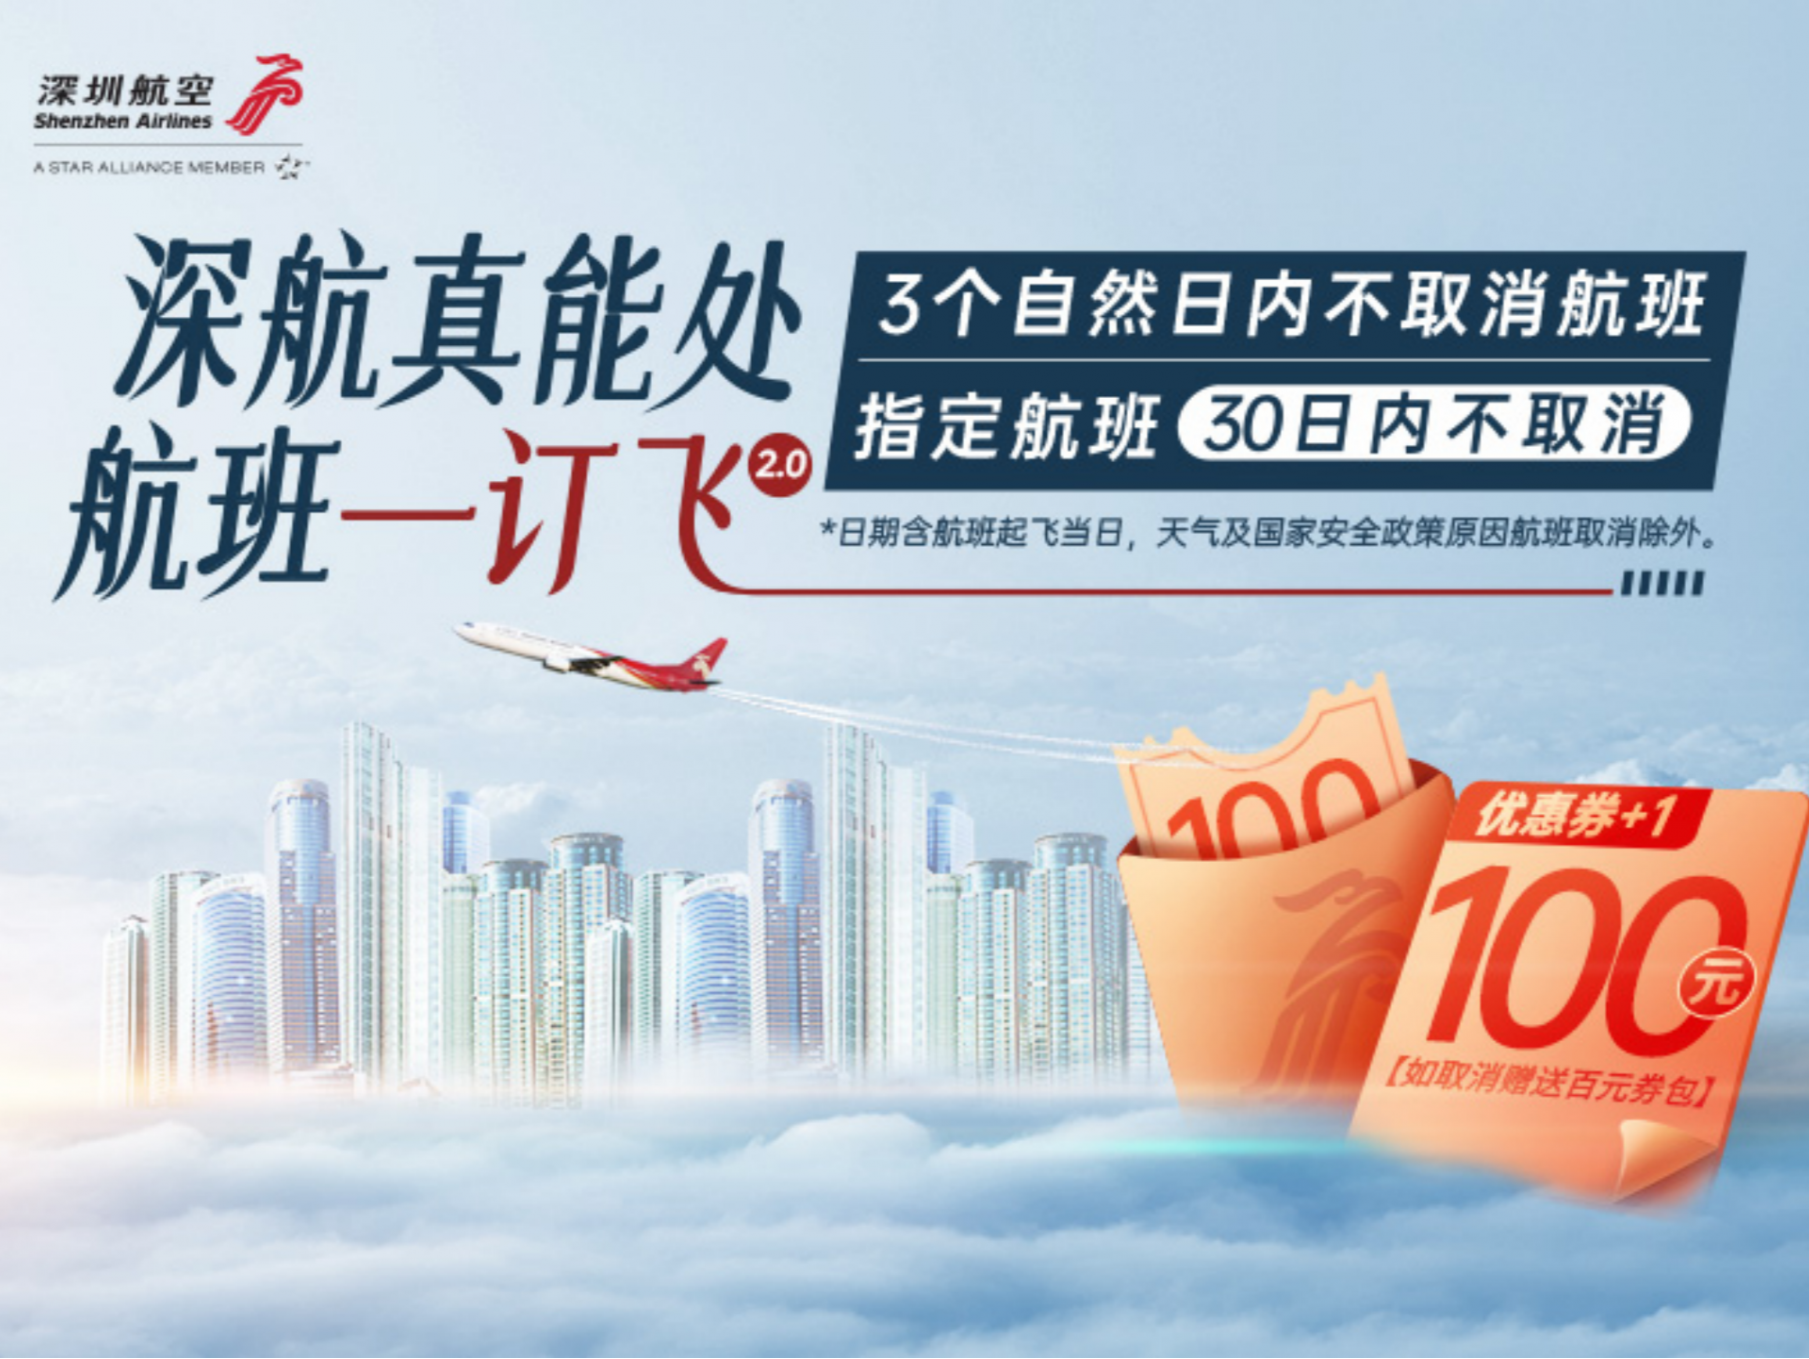 指定航班30日内不取消，深圳航空推出“一订飞2.0”活动